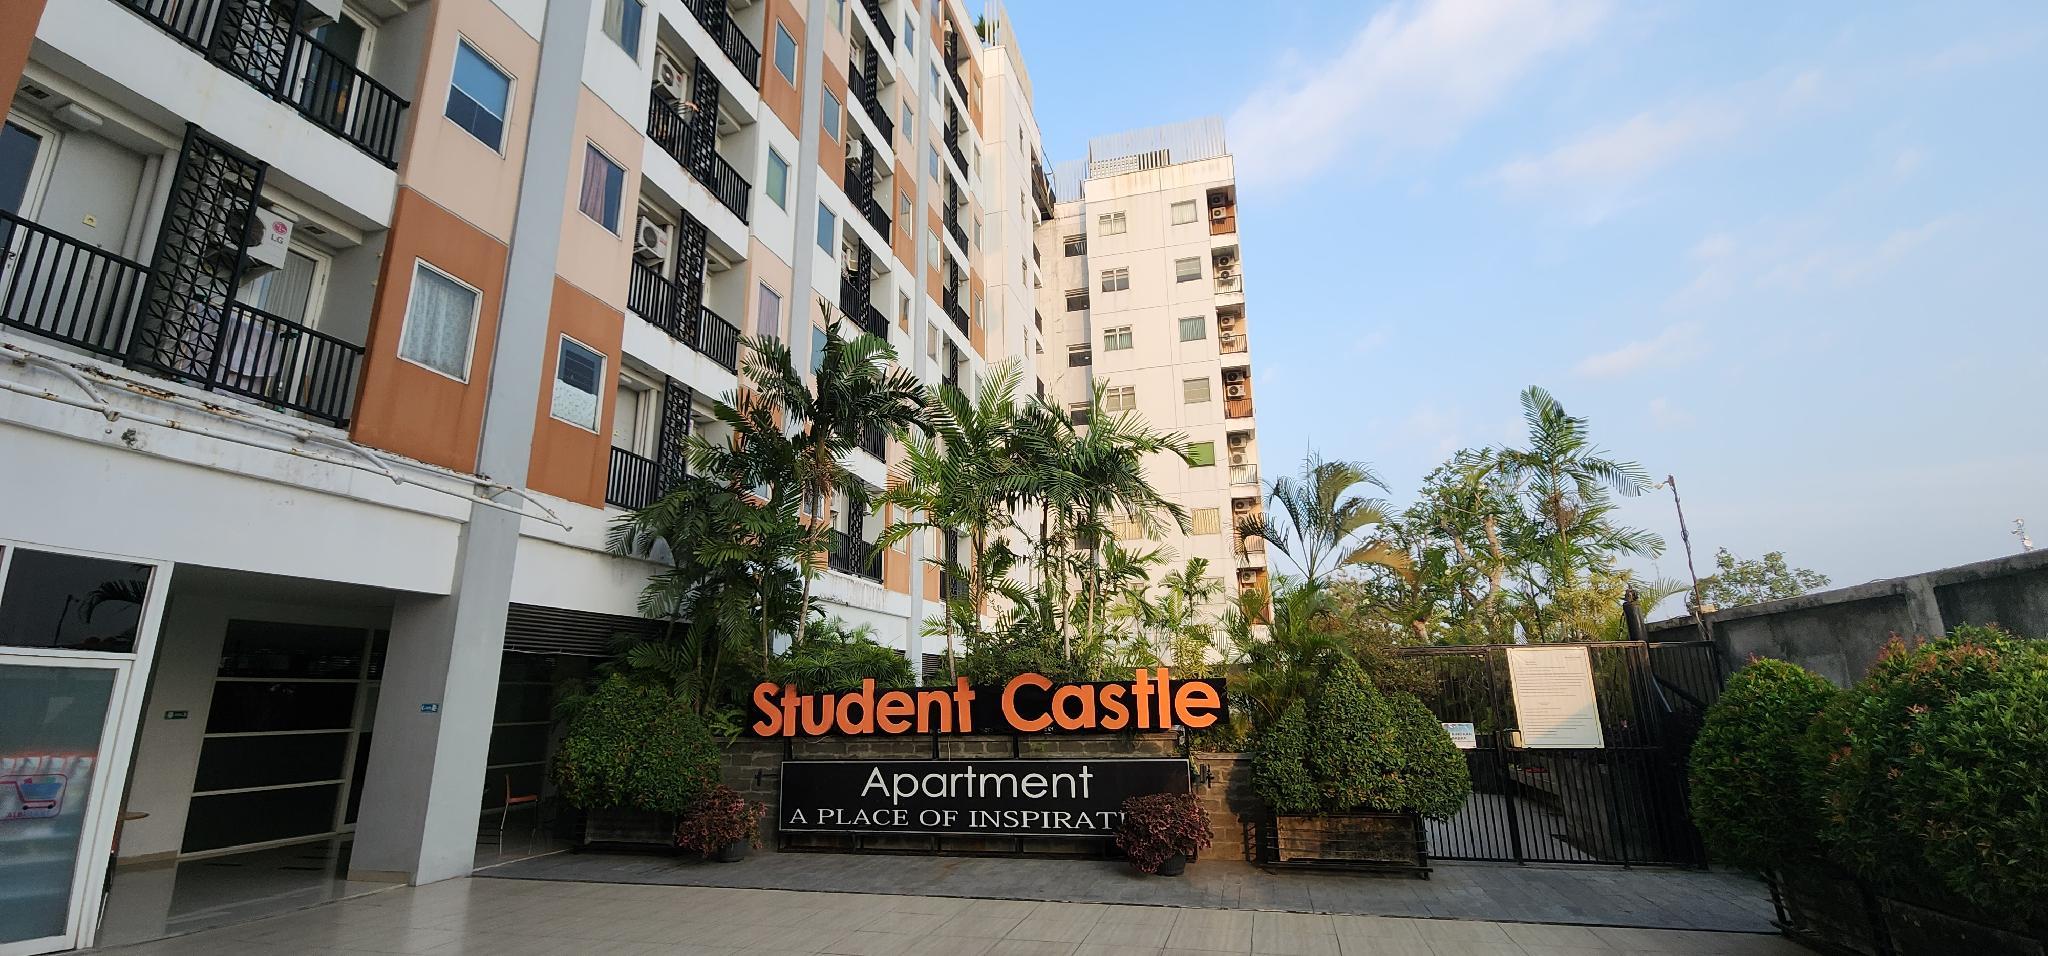 Apartemen Student Castle Yogyakarta - Yogyakarta